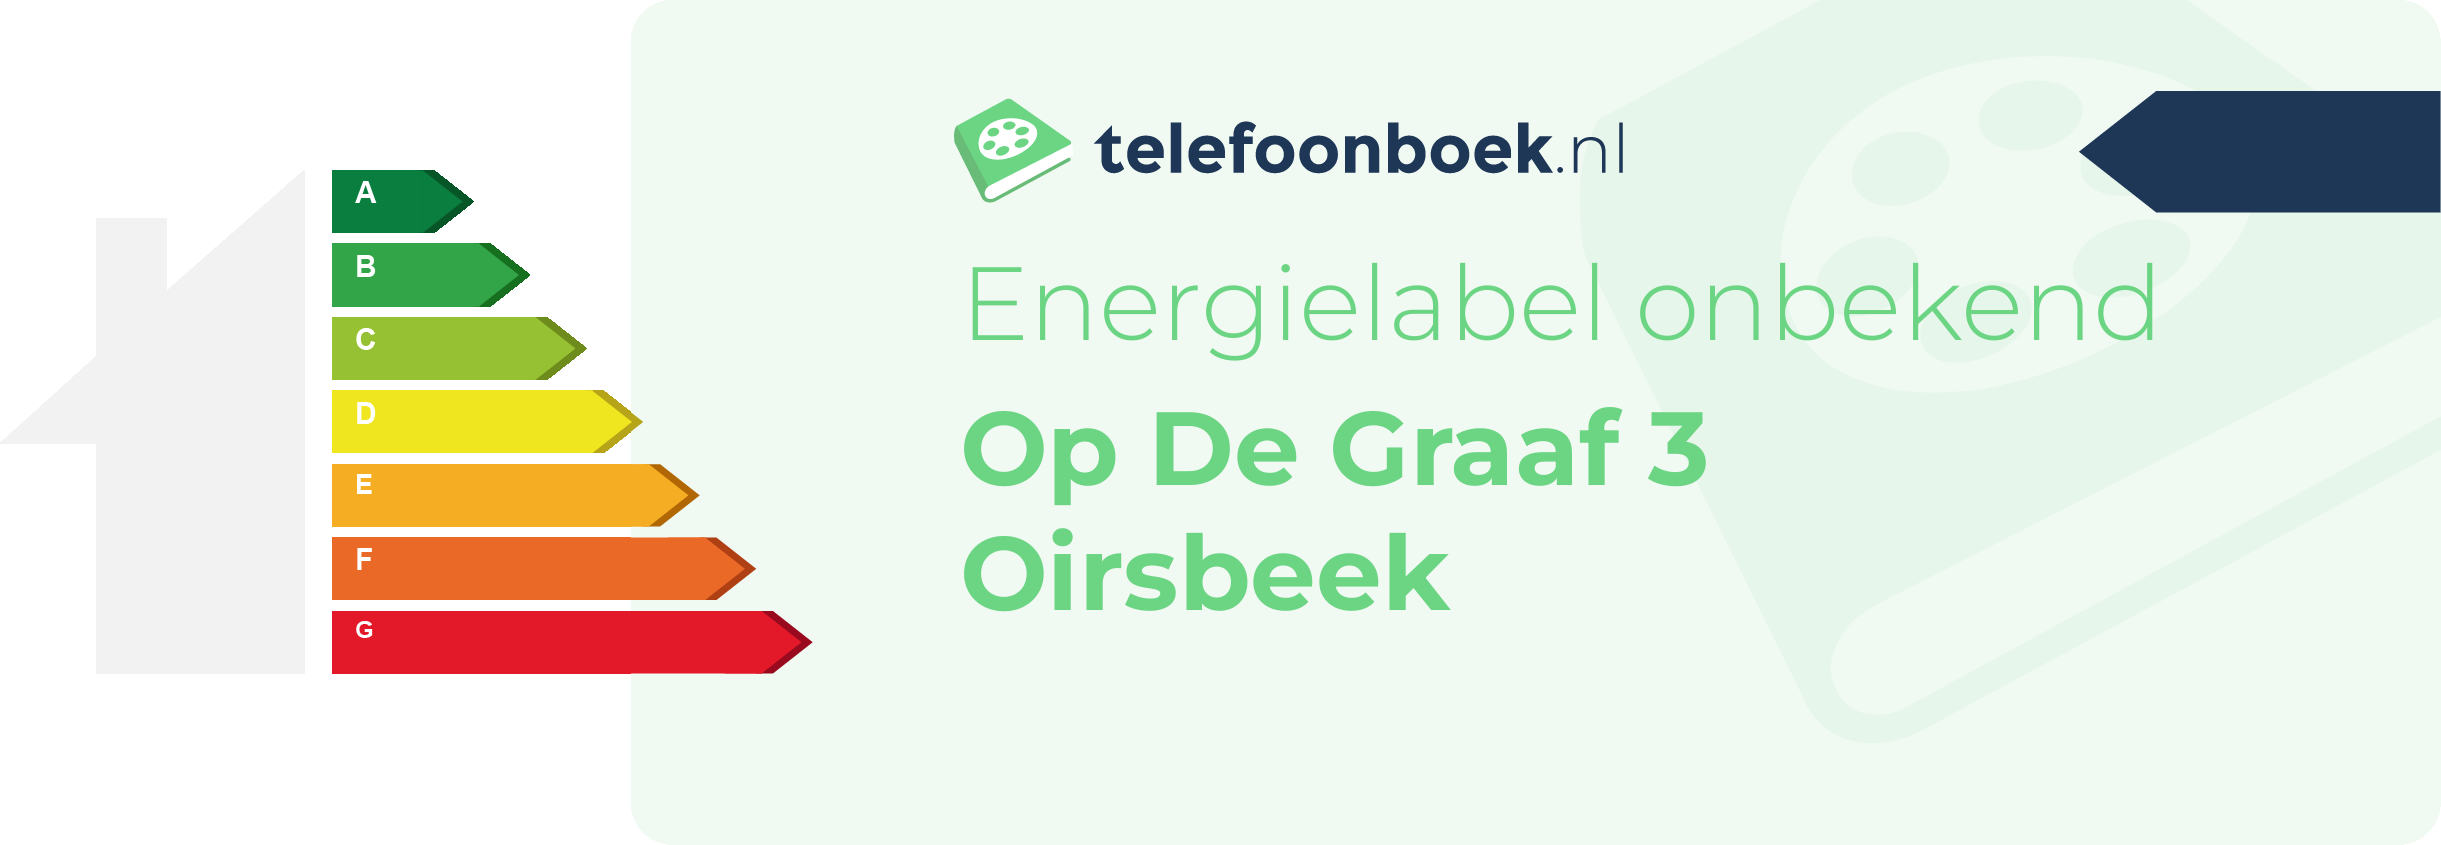 Energielabel Op De Graaf 3 Oirsbeek